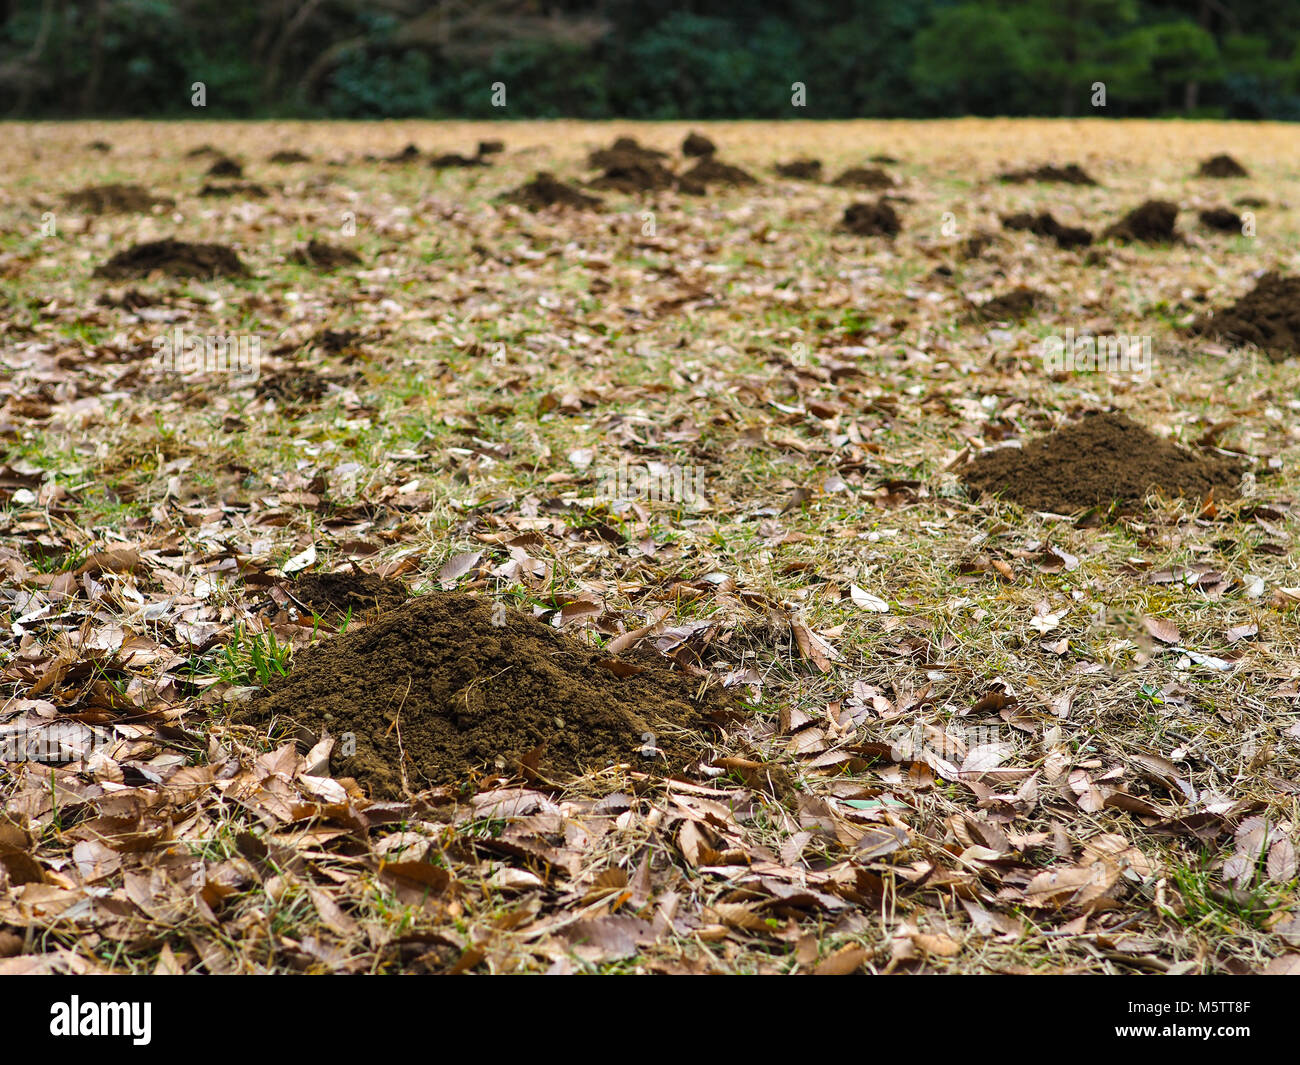 Maulwurfhügel verteilt sich über ein Feld. Kleine Berge von maulwurfshügel Schmutz von Tunneling Maulwürfe auf einem ansonsten Wiese. Stockfoto